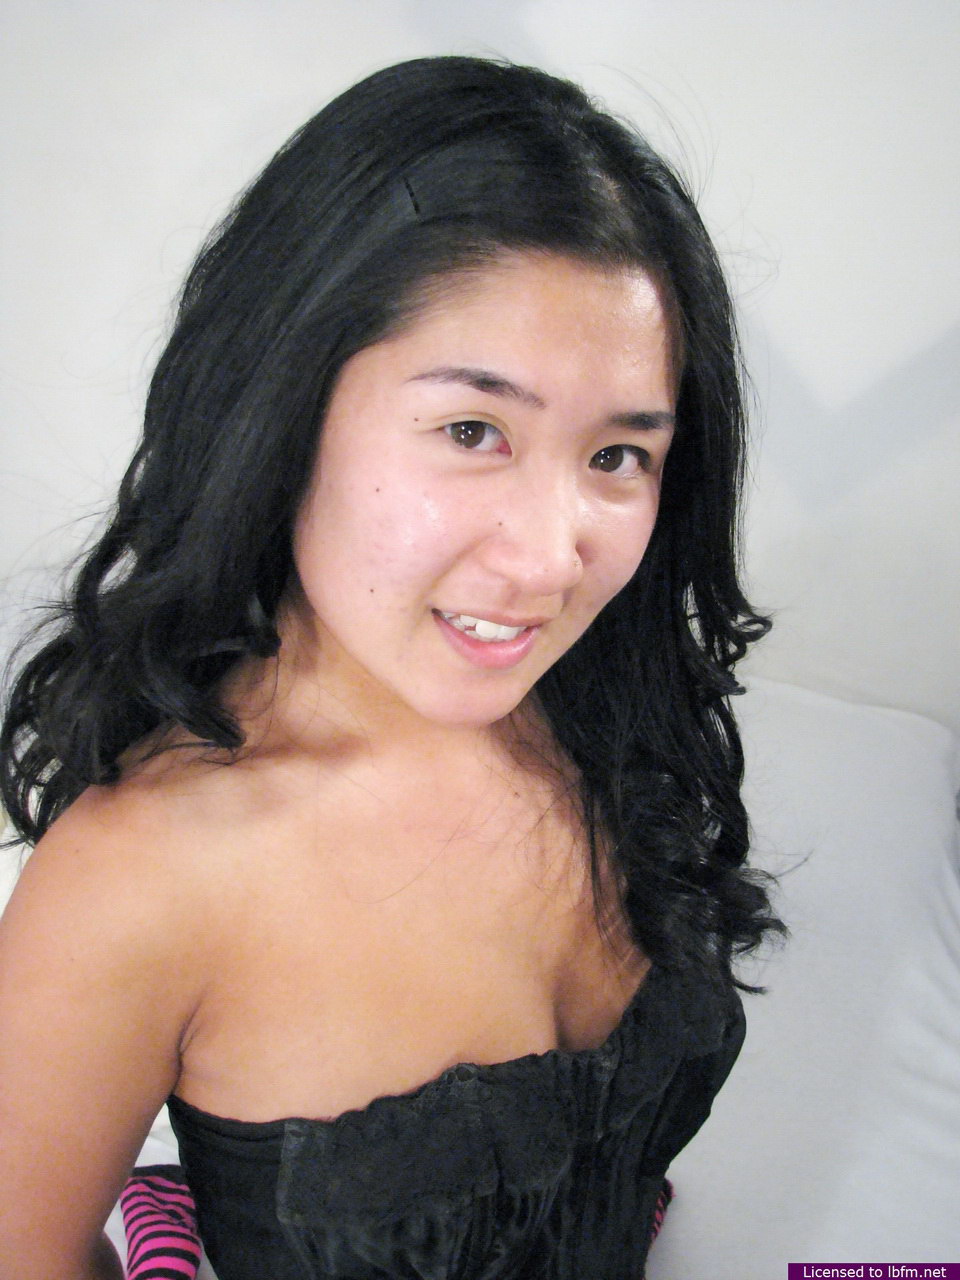 Petite Asian amateur sucks off a small cock after having her pussy fondled foto pornográfica #424816167 | LBFM Pics, Asian, pornografia móvel